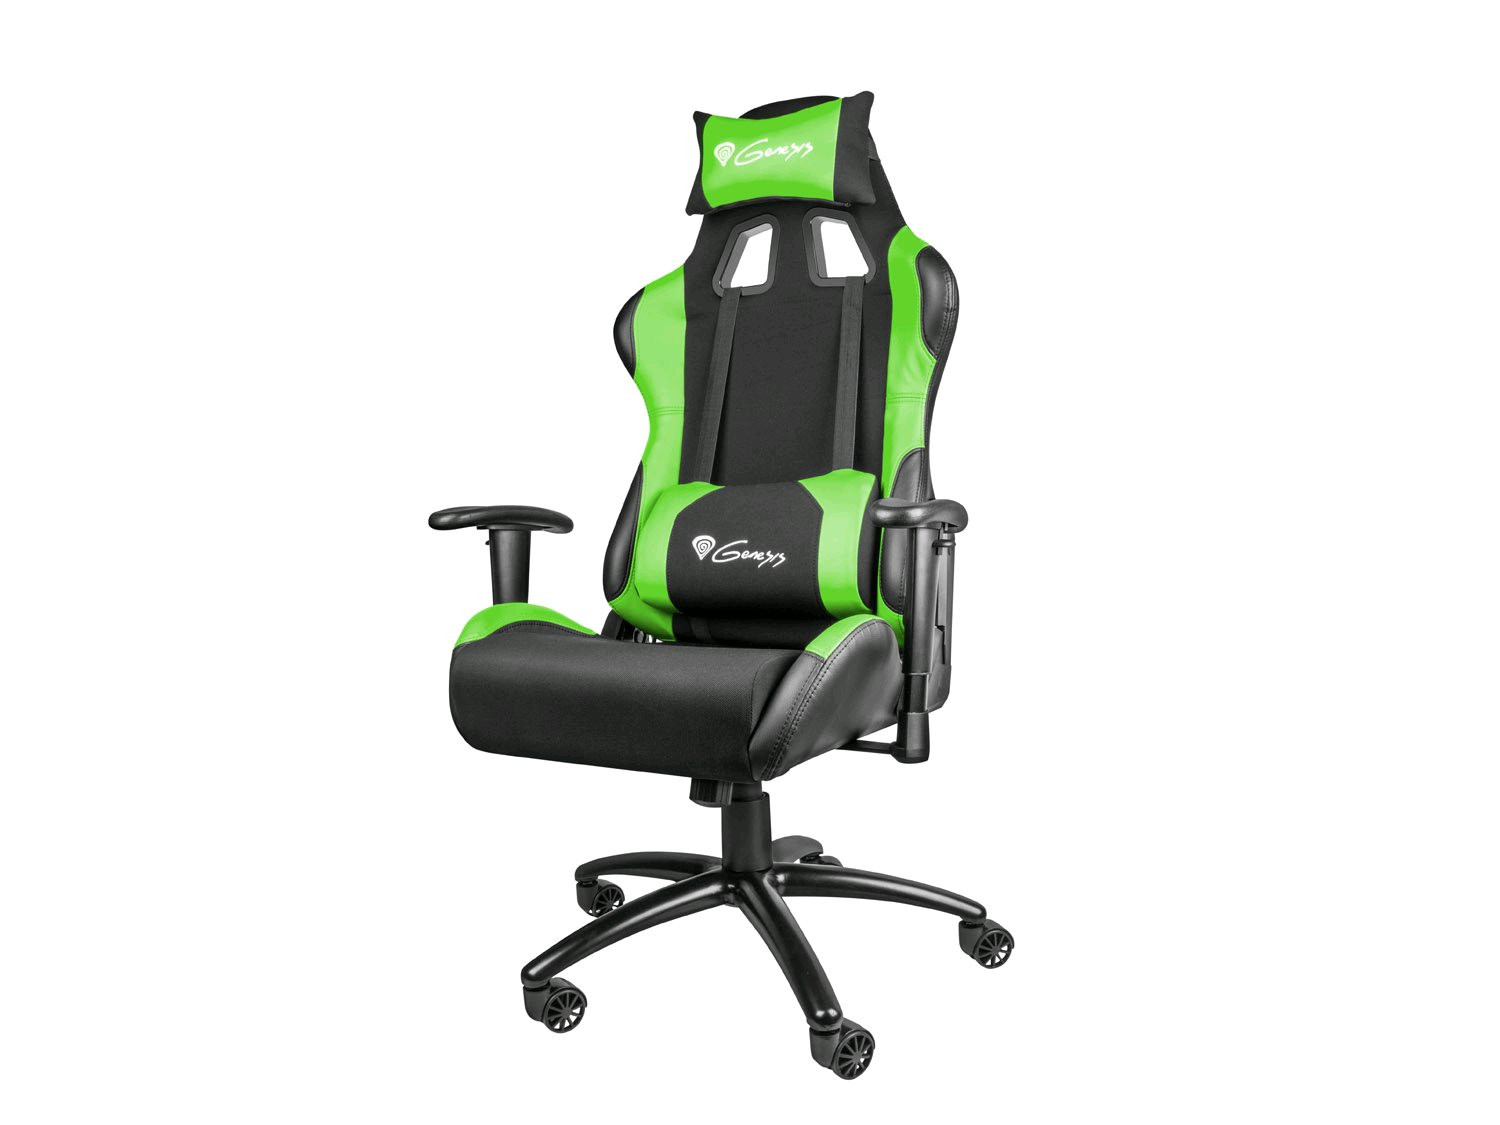 Herní židle NATEC Genesis Nitro 550, černá/zelená | AB-COM.cz